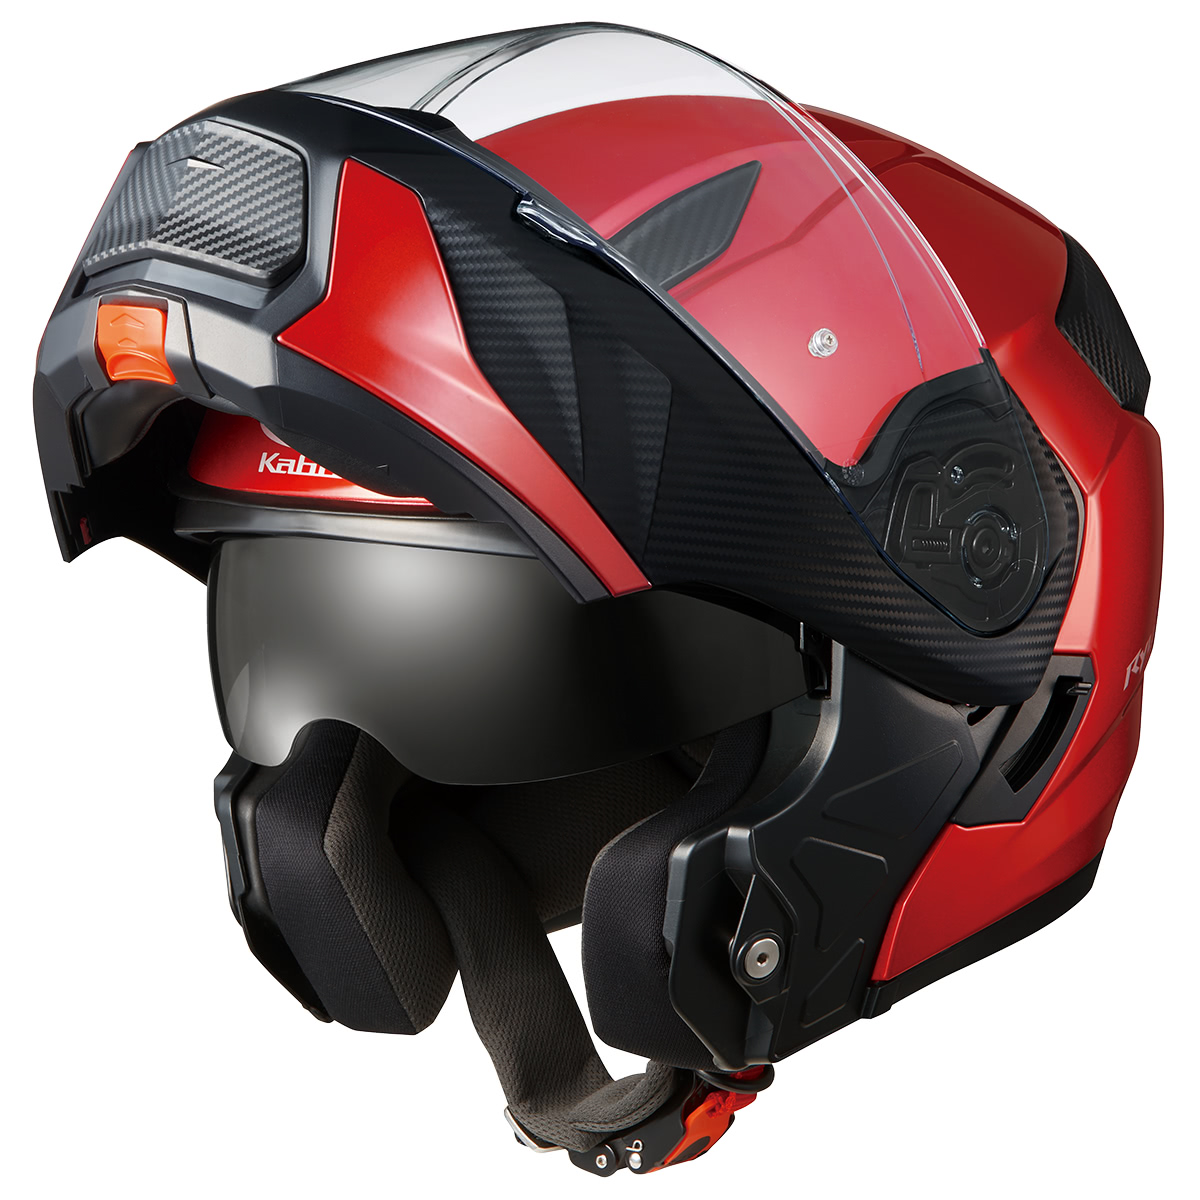 OGKカブト システムヘルMサイズ リュウキ美品 - ヘルメット/シールド